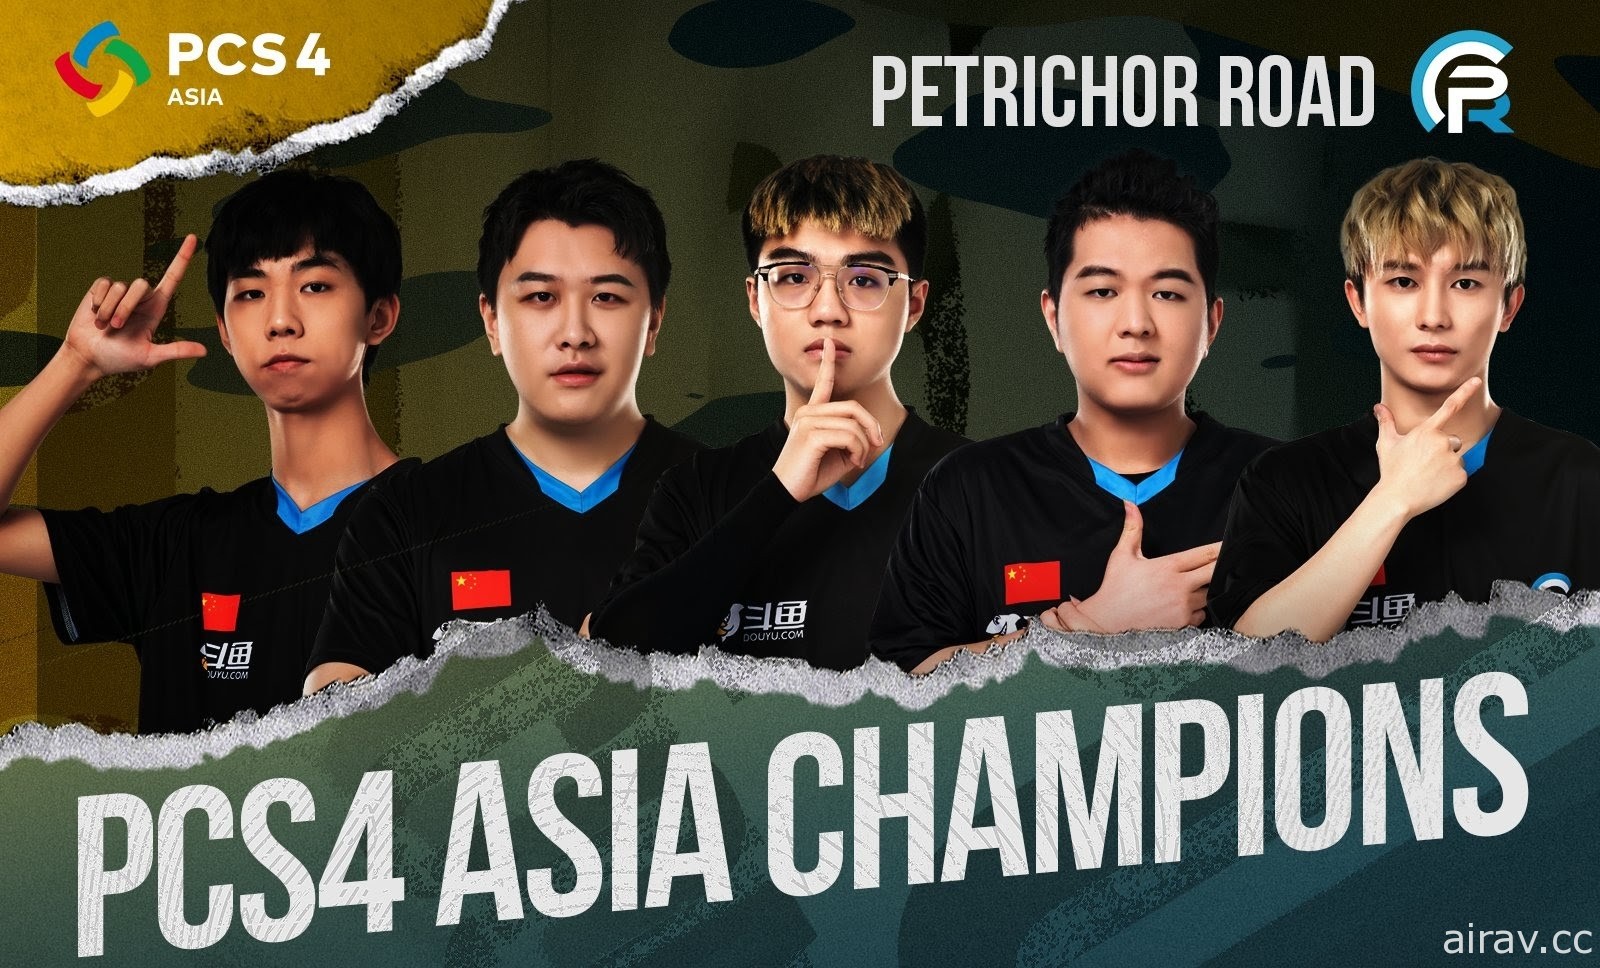 《絕地求生》PCS4 洲際系列亞洲賽由中國 PeRo 奪冠